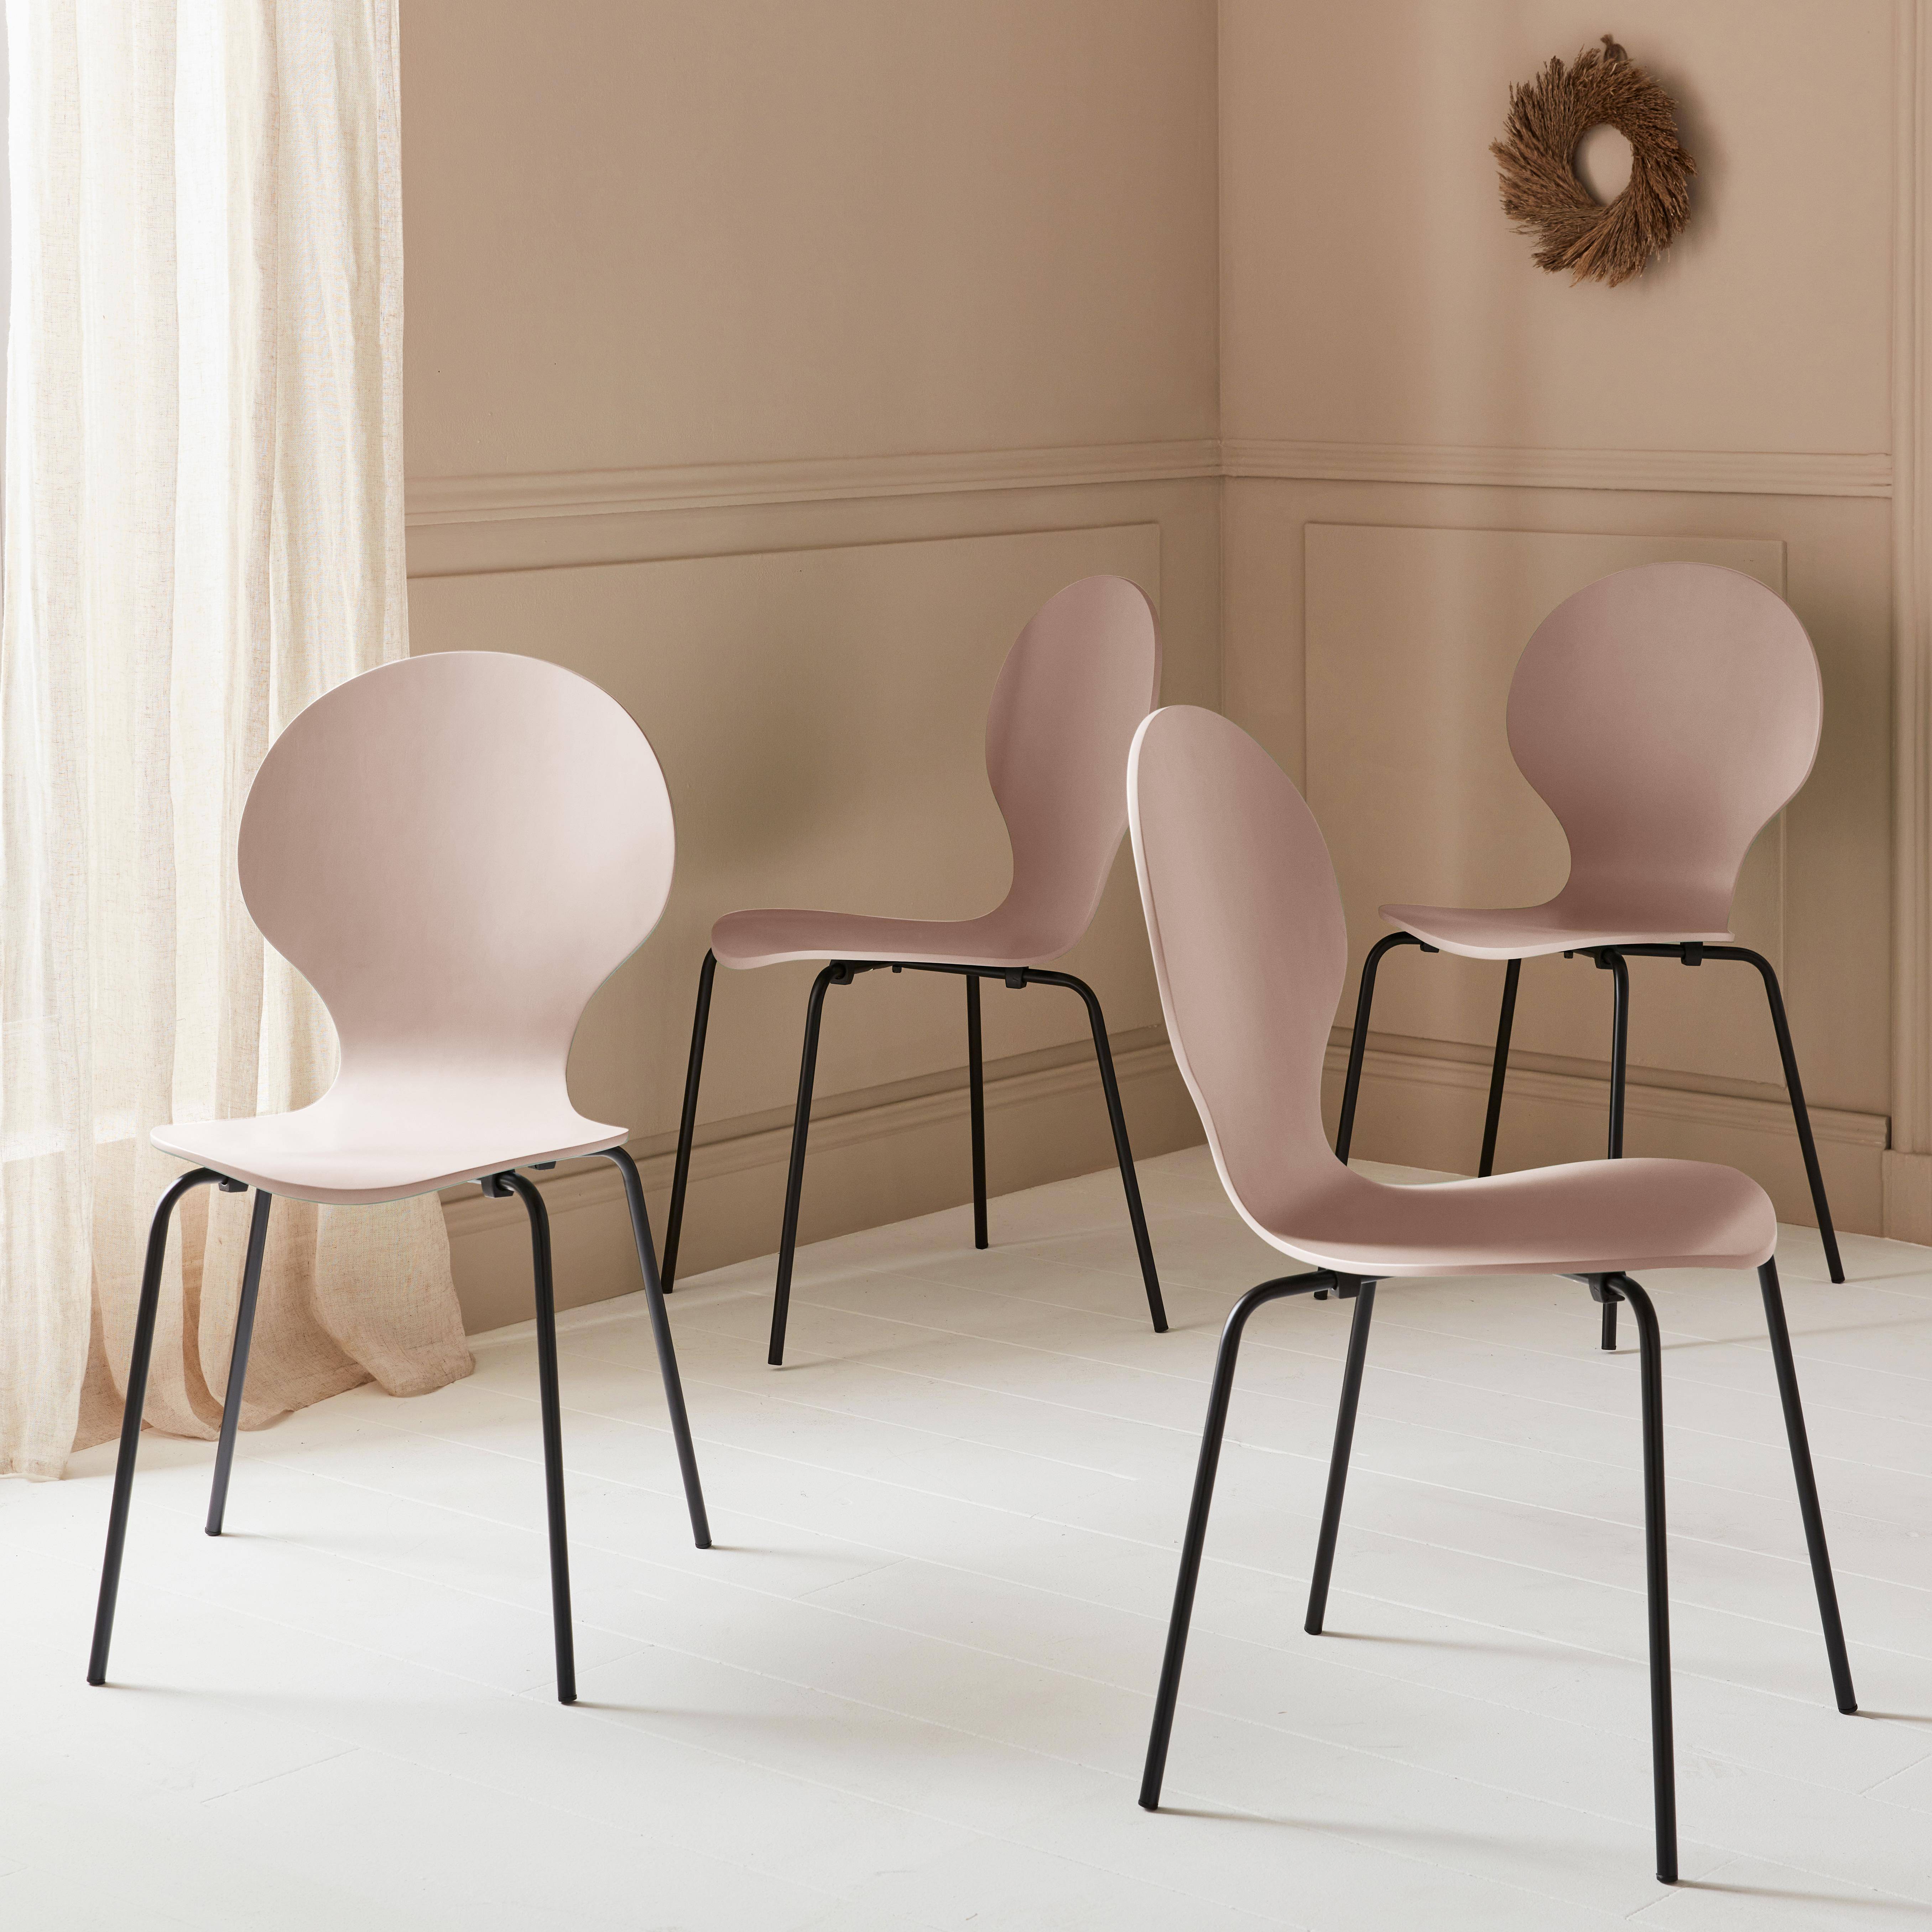 Set di 4 sedie rosa retro impilabili, legno di hevea e compensato, gambe in acciaio, Naomi, L 43 x P 48 x H 87cm,sweeek,Photo1